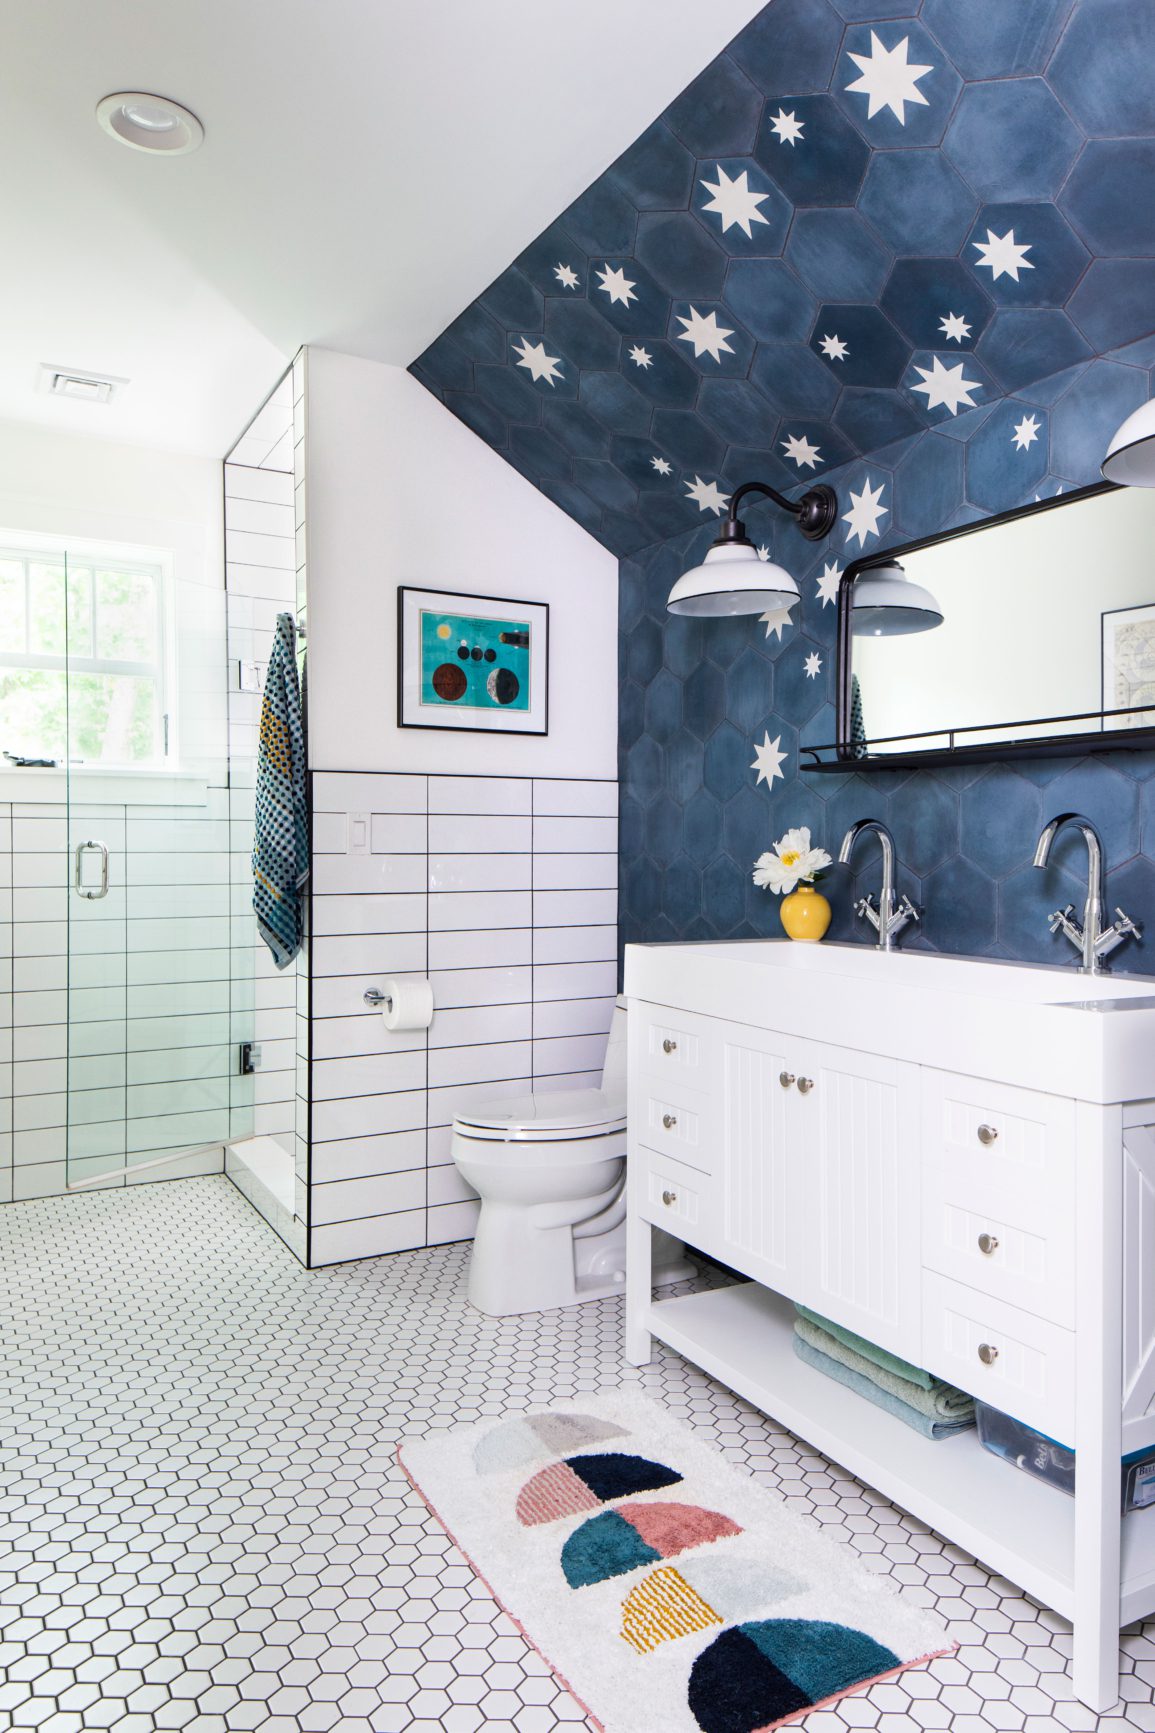 Starry tiles in white bathroom